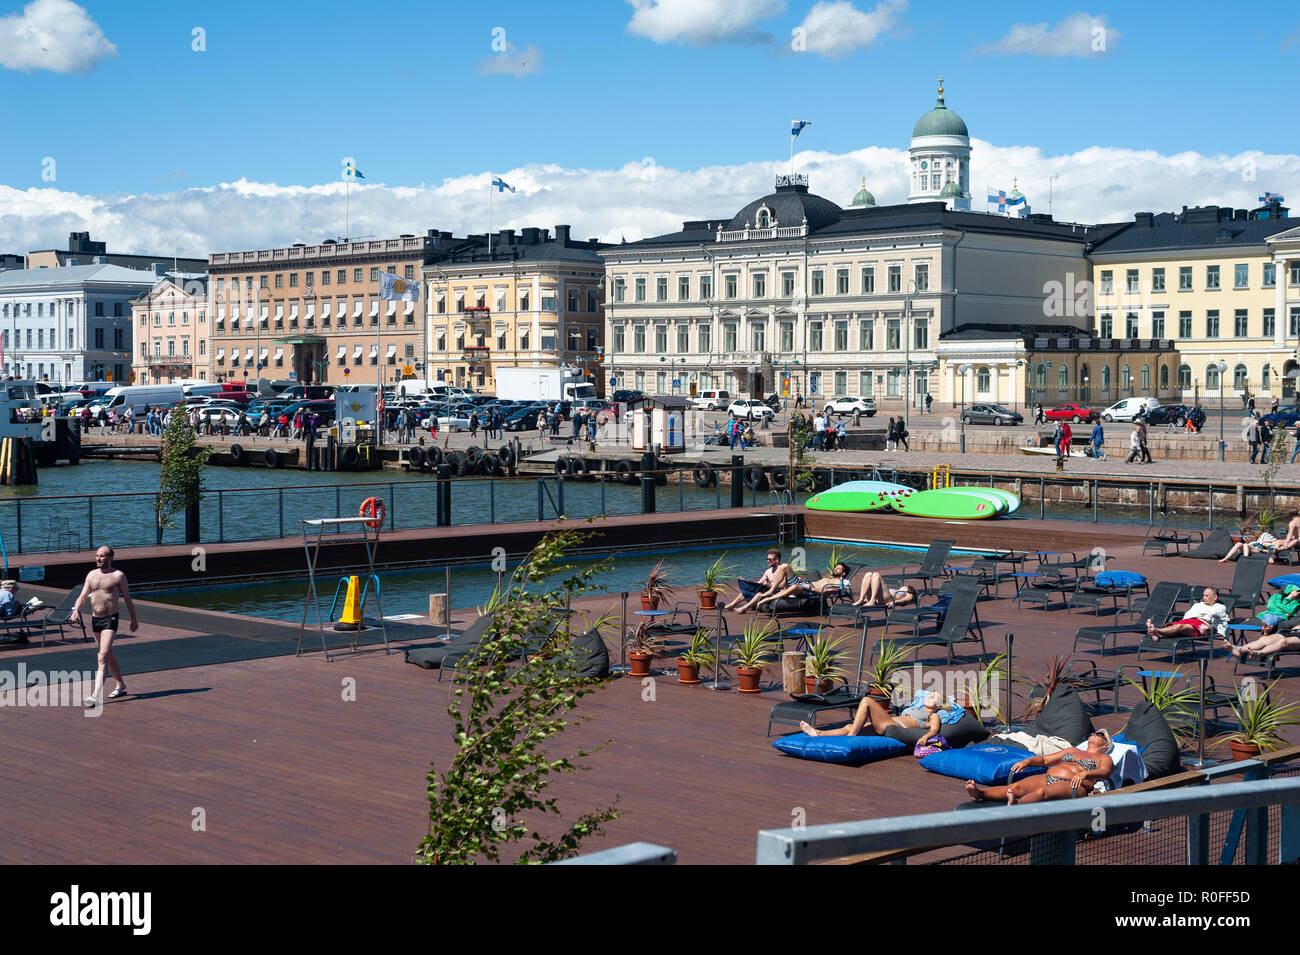 23.06.2018 - Helsinki, Finlande, Europe - le soleil sur la terrasse de la piscine de la mer d'Allas avec une vue sur le port et la place centrale du marché. Banque D'Images